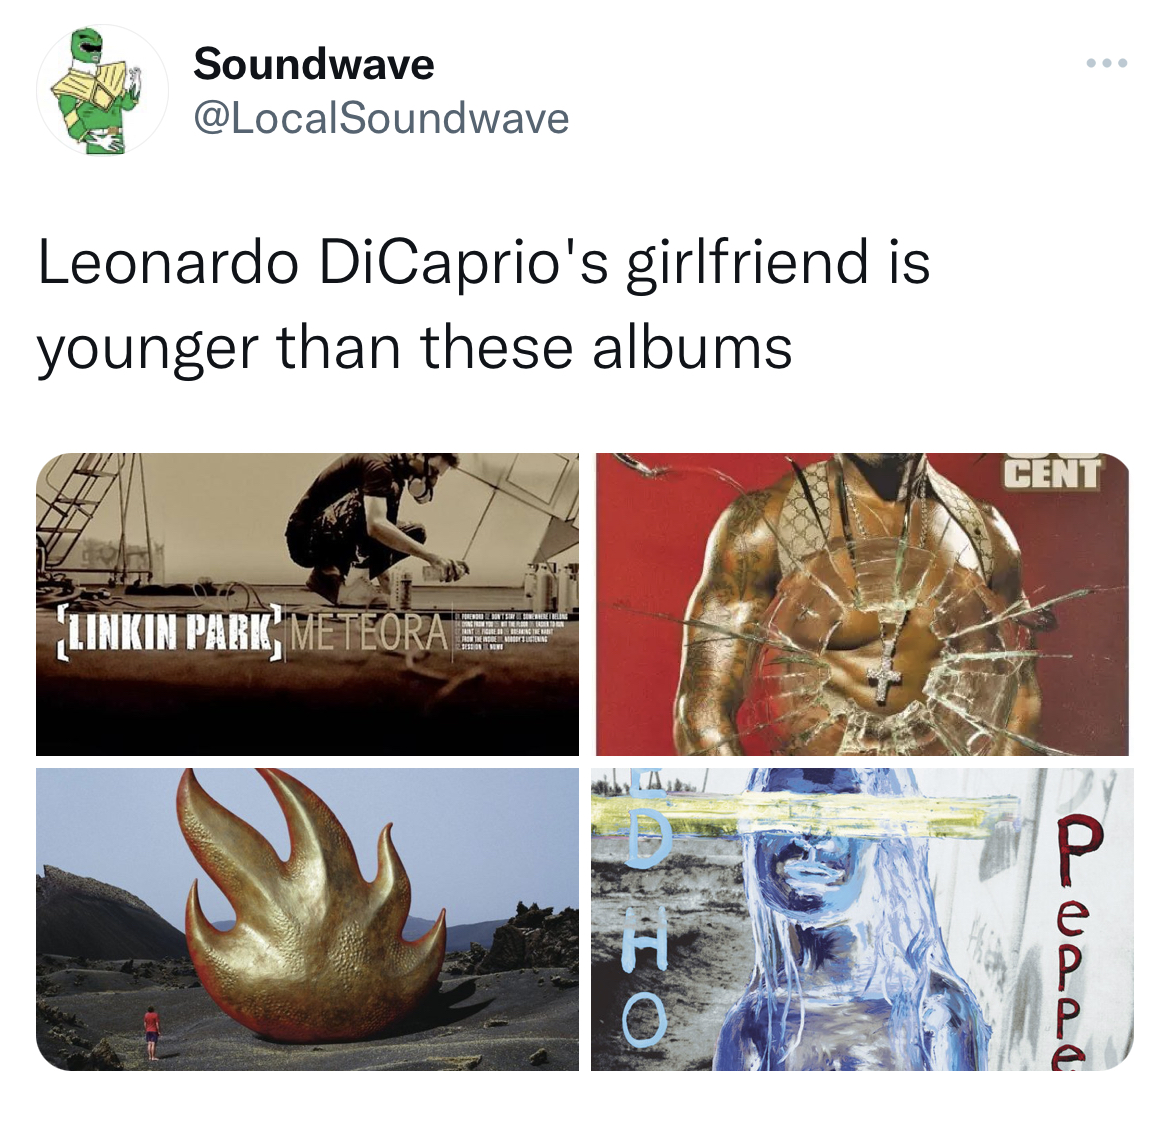 Leonardo DiCaprio Girlfriend Memes - album cover - Soundwave Leonardo DiCaprio's girlfriend is younger than these albums Linkin Park Meteora Cent Pudde P e